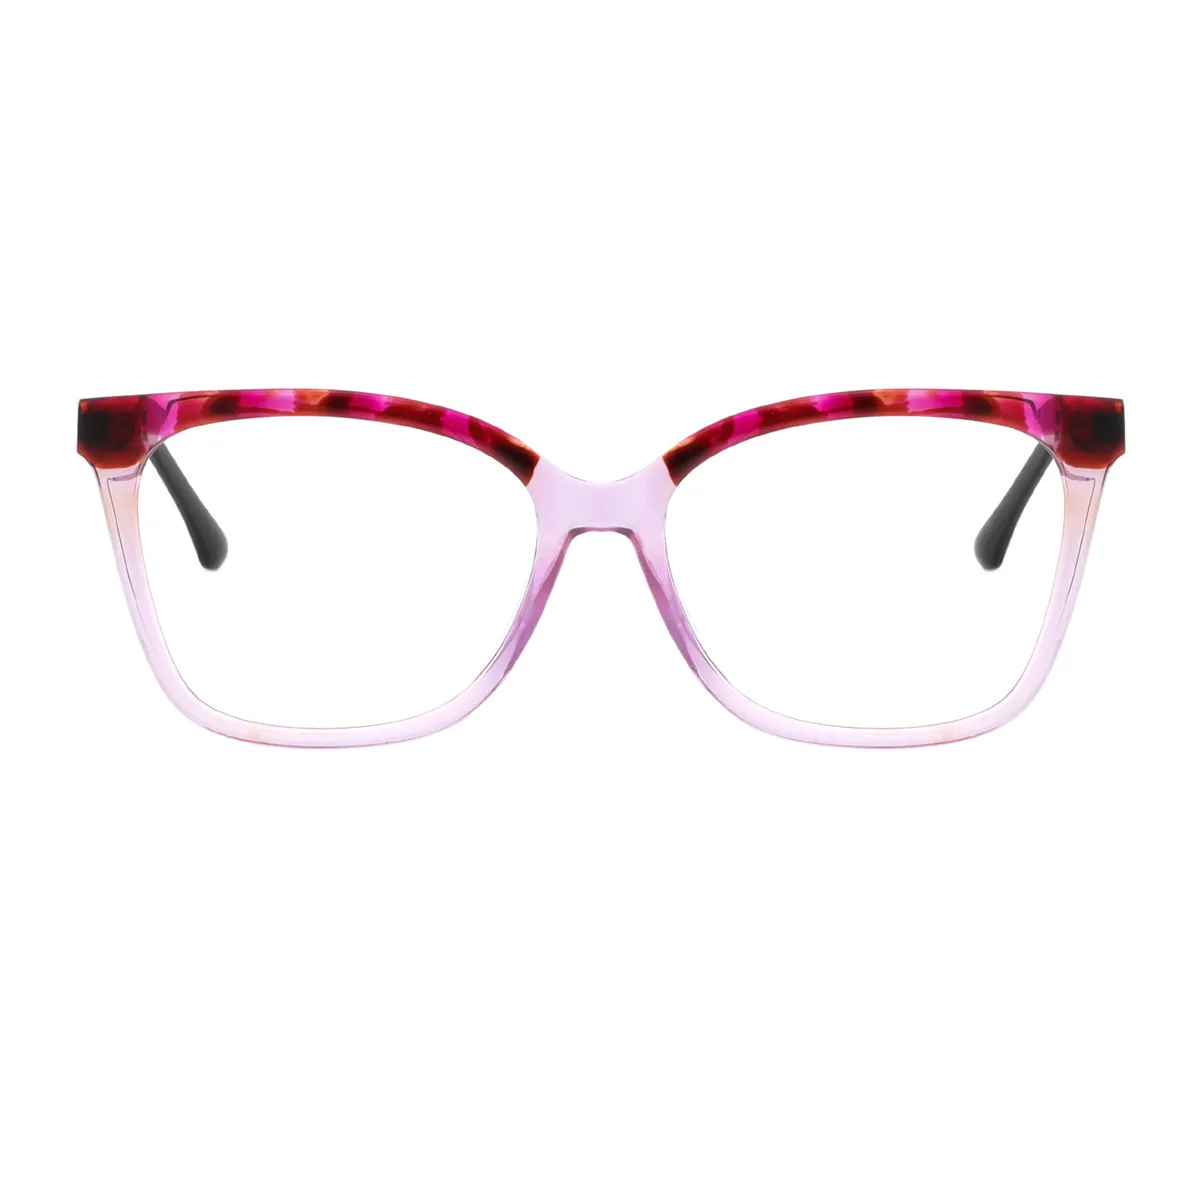 Fashion Square Black  Eyeglasses for Women